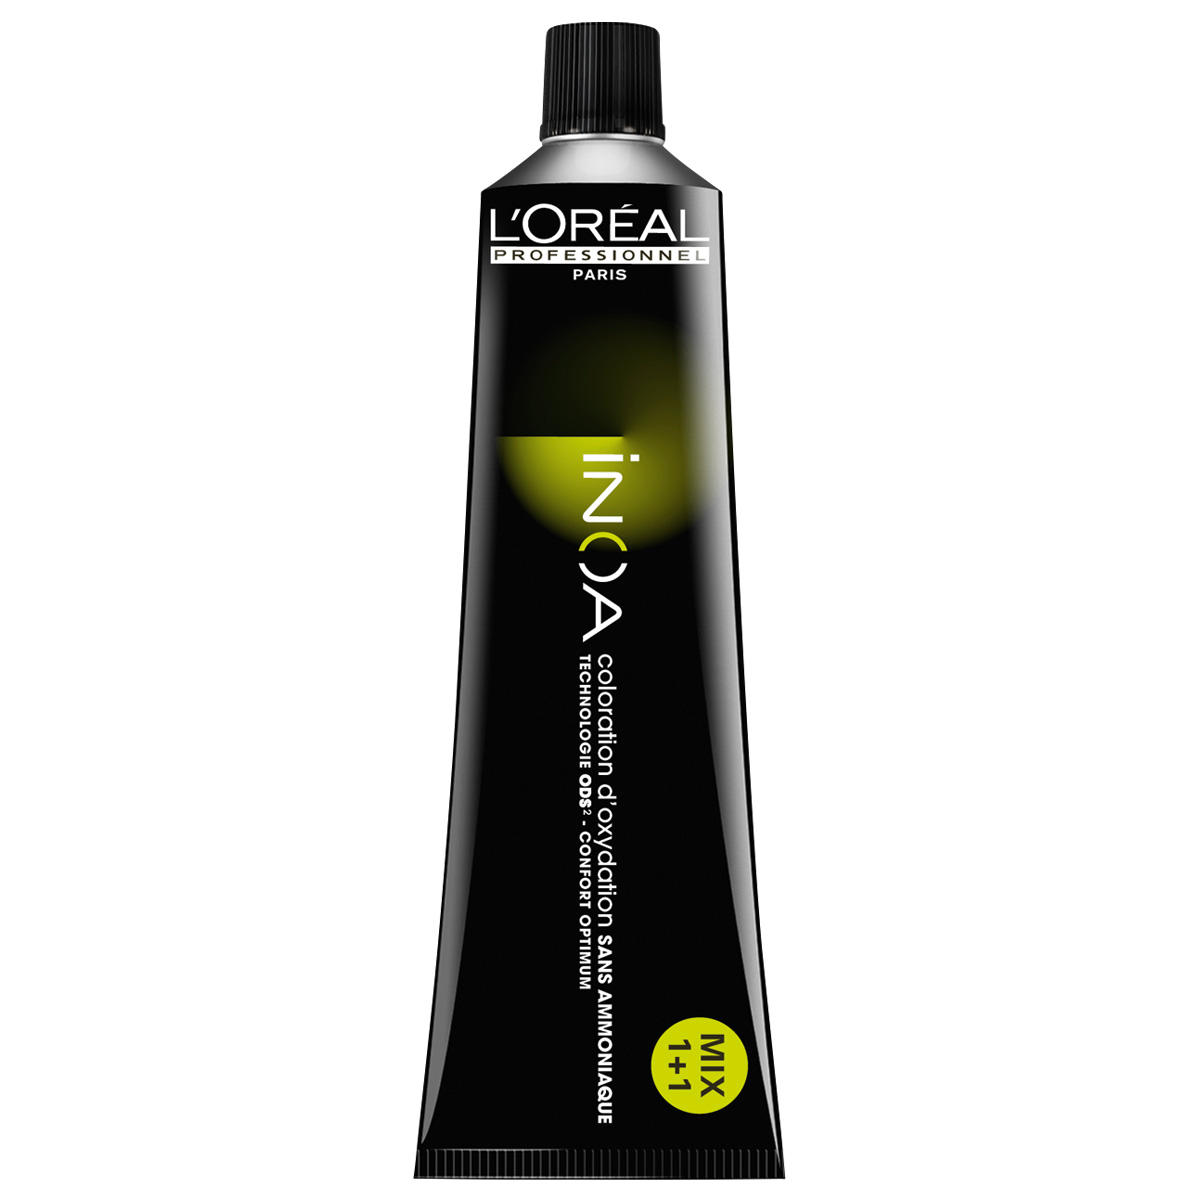 L'Oréal Professionnel Paris Coloration 5 brun clair, Tube 60 ml